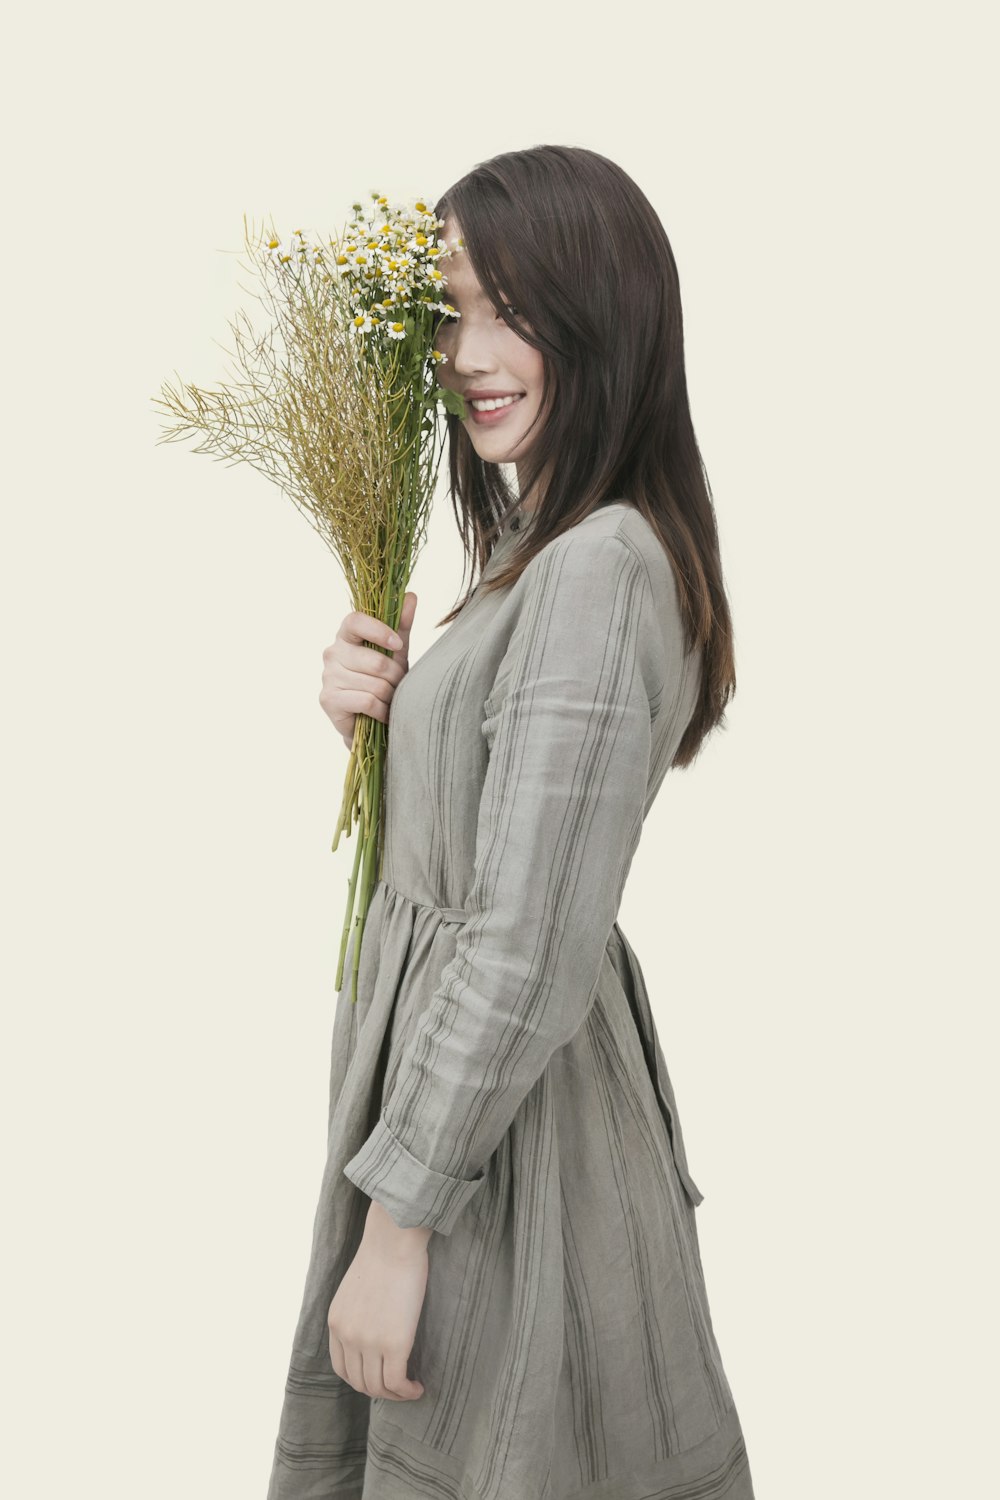 灰色と黒の縞模様の長袖ドレスを着て、白い花びらの花を手にした女性